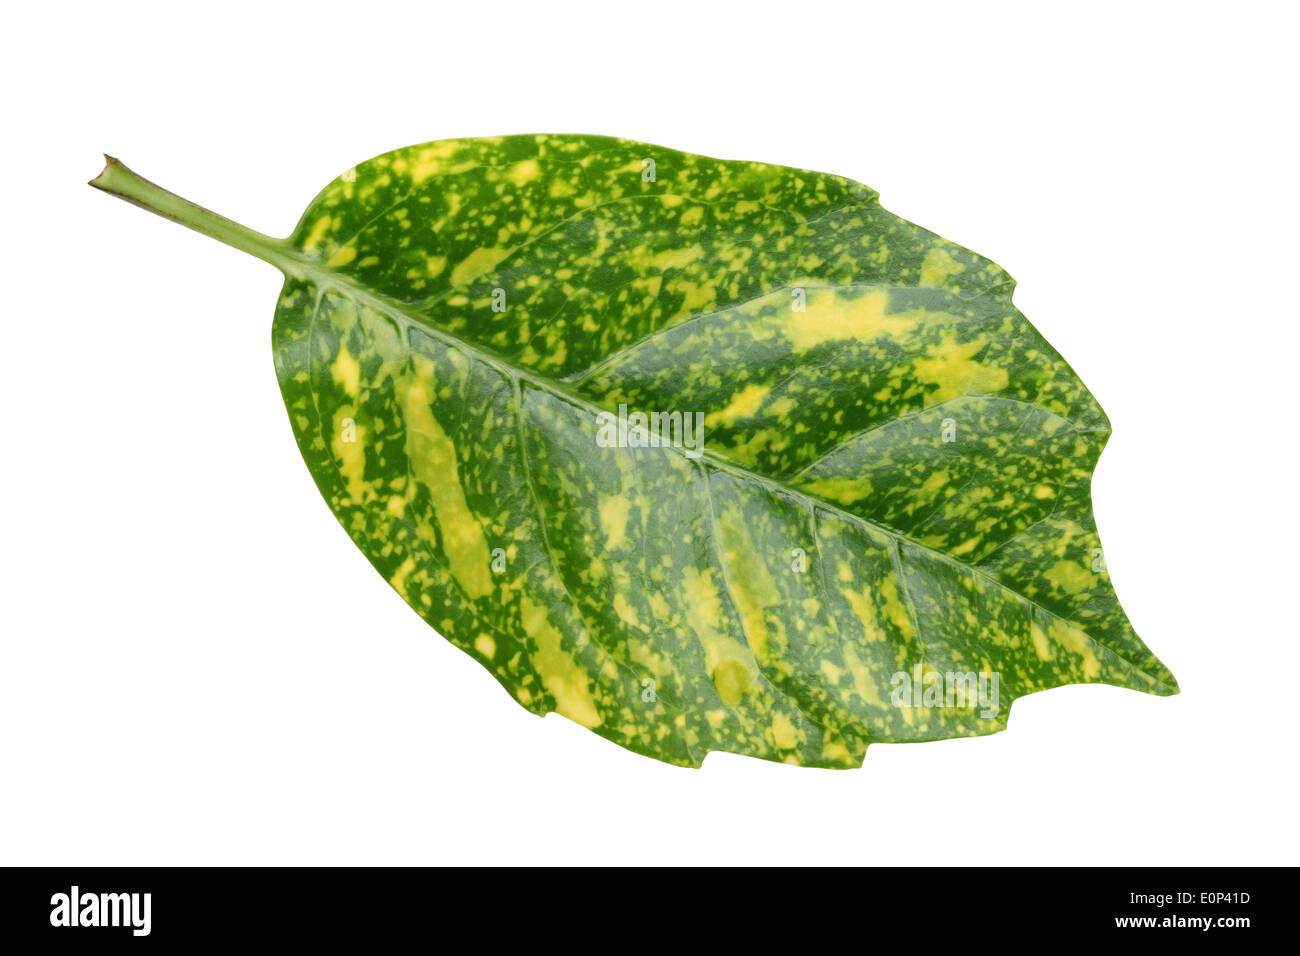 leaf of dracaena isolated on white background Stock Photo